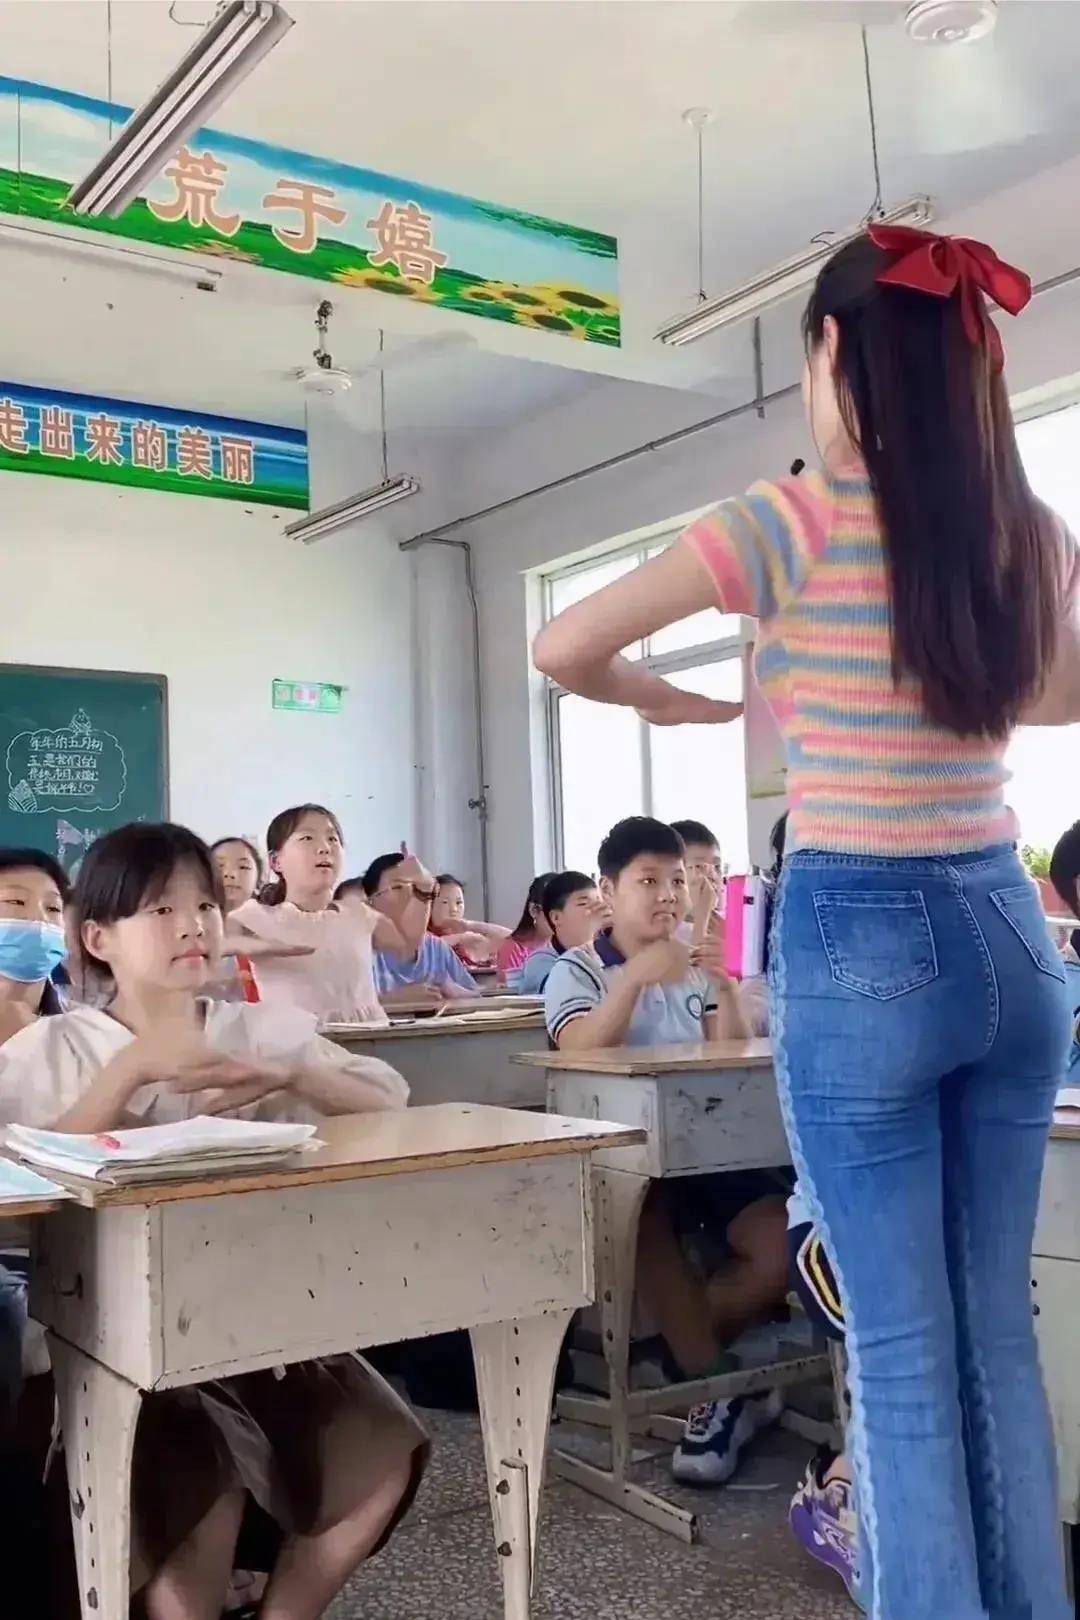 上海女教师和未成年学生发生44次性关系，大量细节和照片遭到曝光 - 知乎